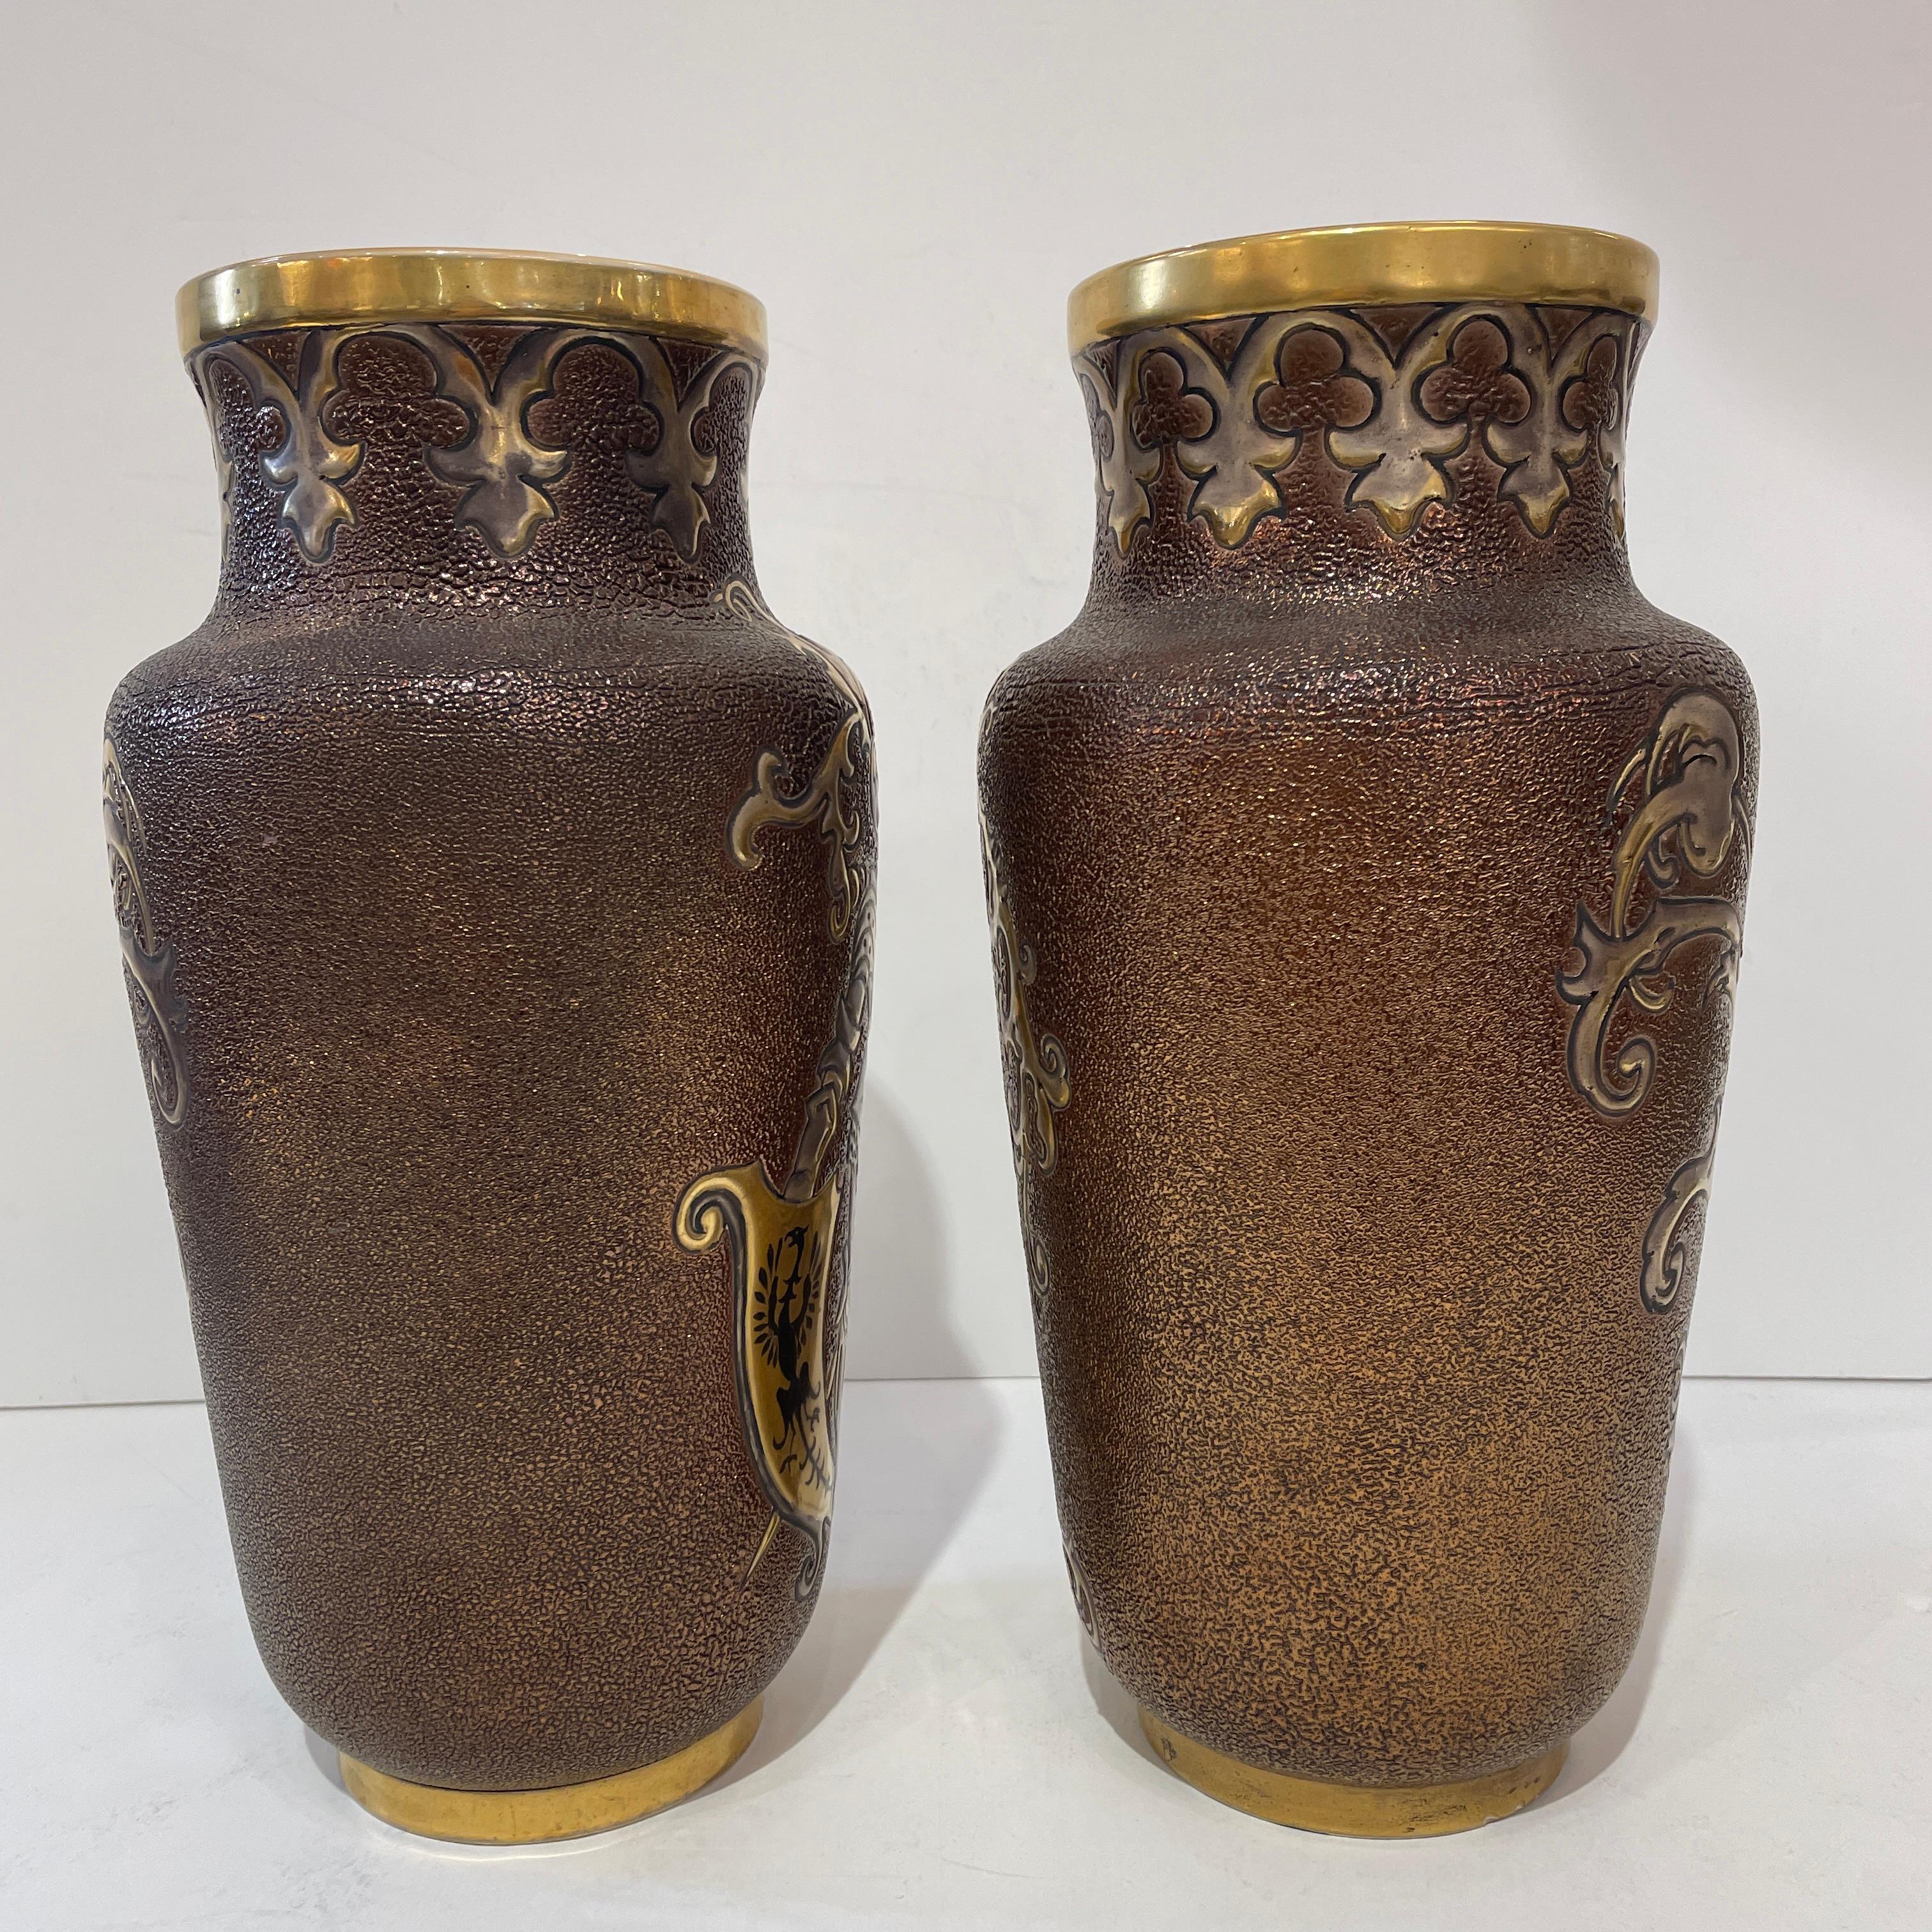 Ein sehr seltenes, signiertes Paar Fayence-Vasen aus der renommierten französischen Manufaktur Gien, mit einer einzigartigen Emailliertechnik, die wegen der schwierigen und zeitaufwändigen Verarbeitung 